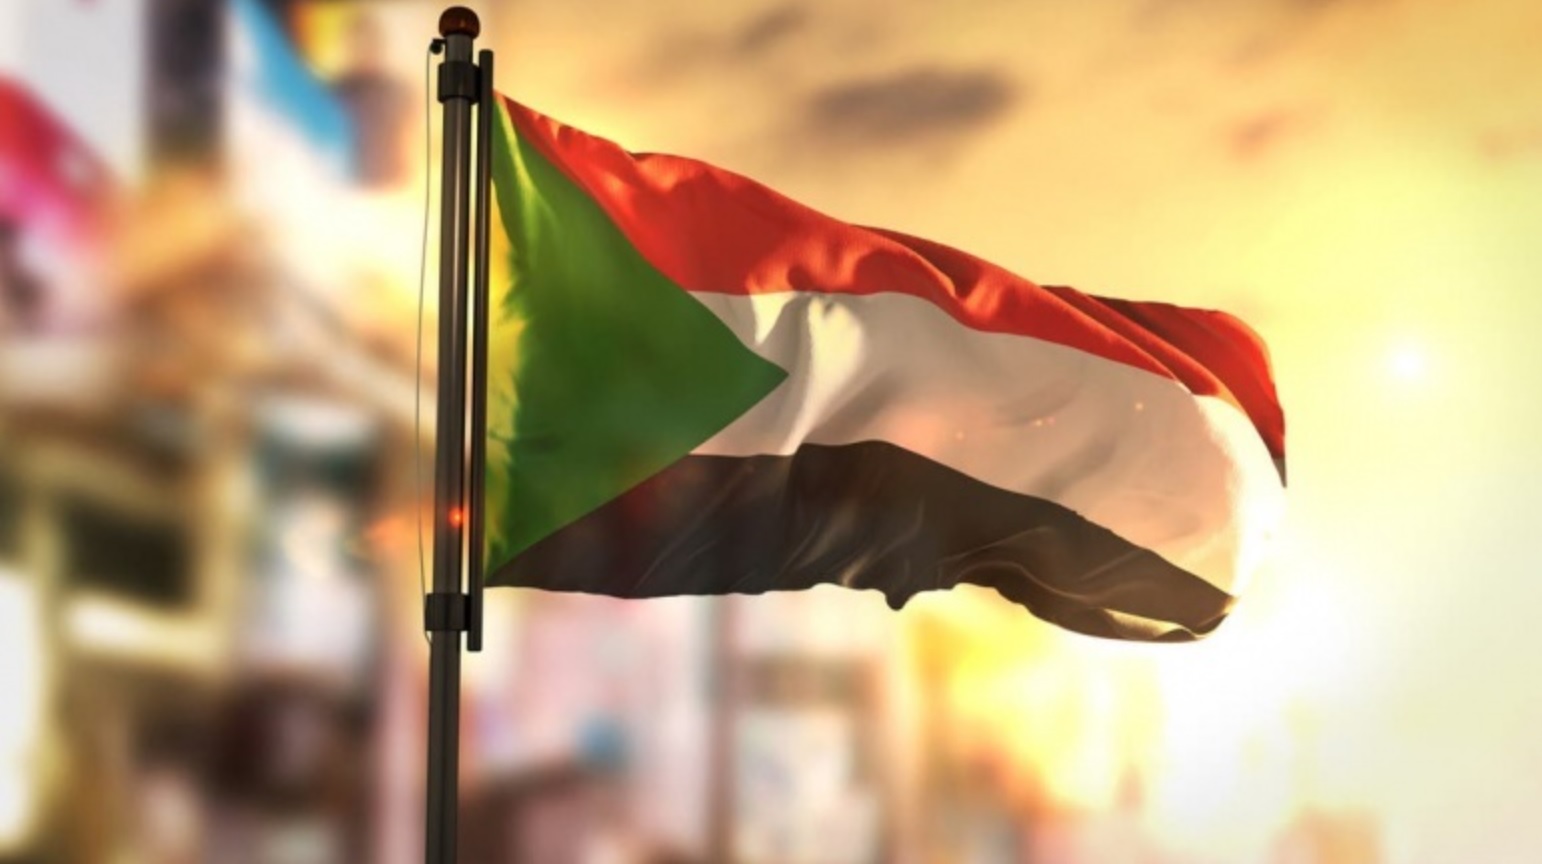 EU raises Sudanese flag 'to honor people'